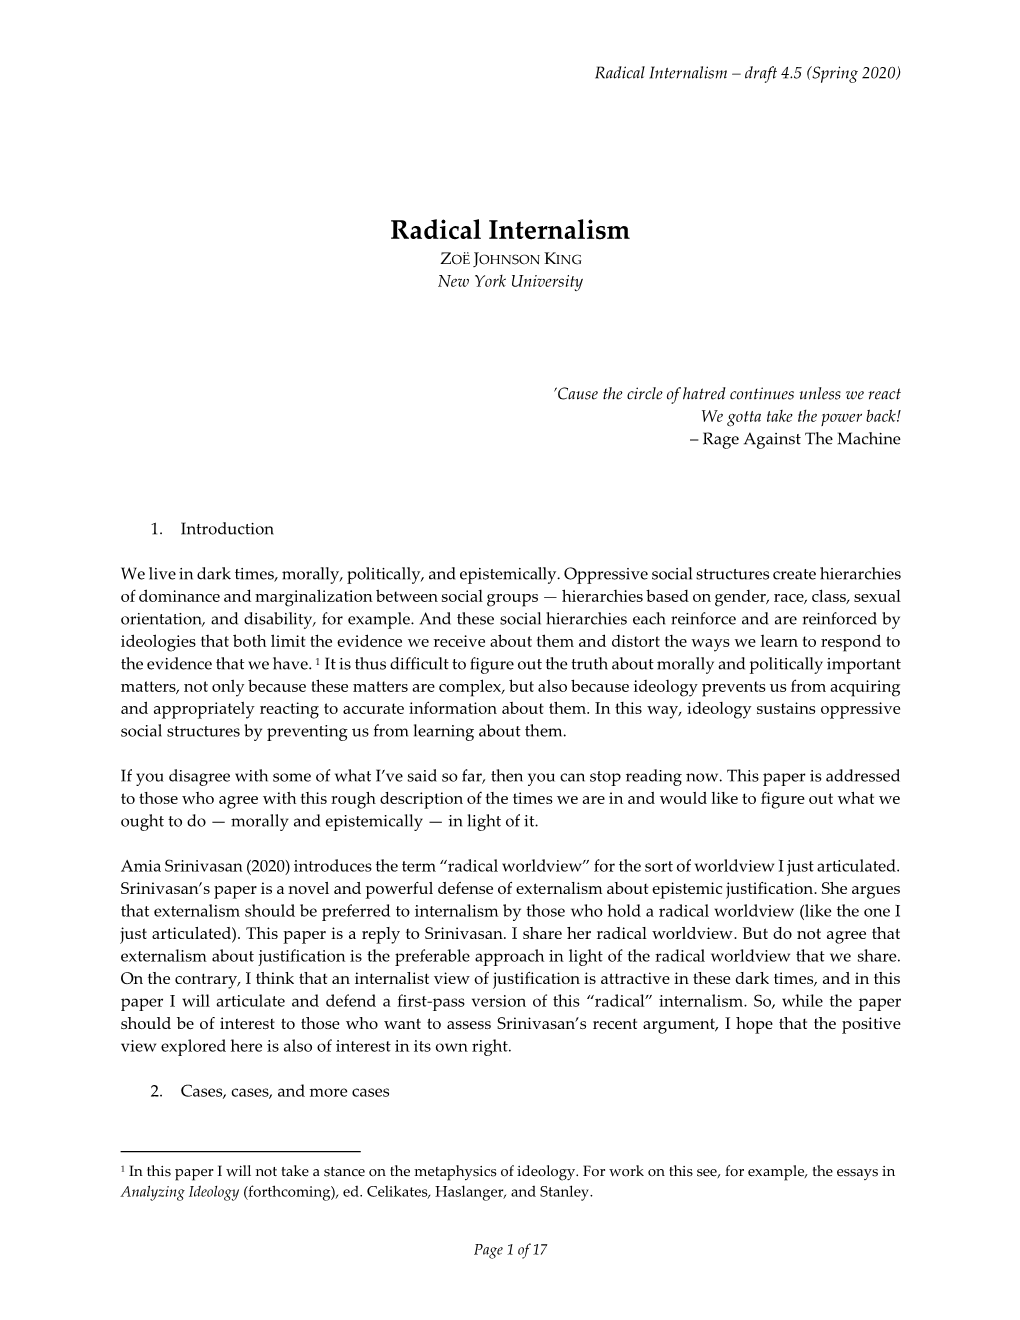 Radical Internalism – Draft 4.5 (Spring 2020)